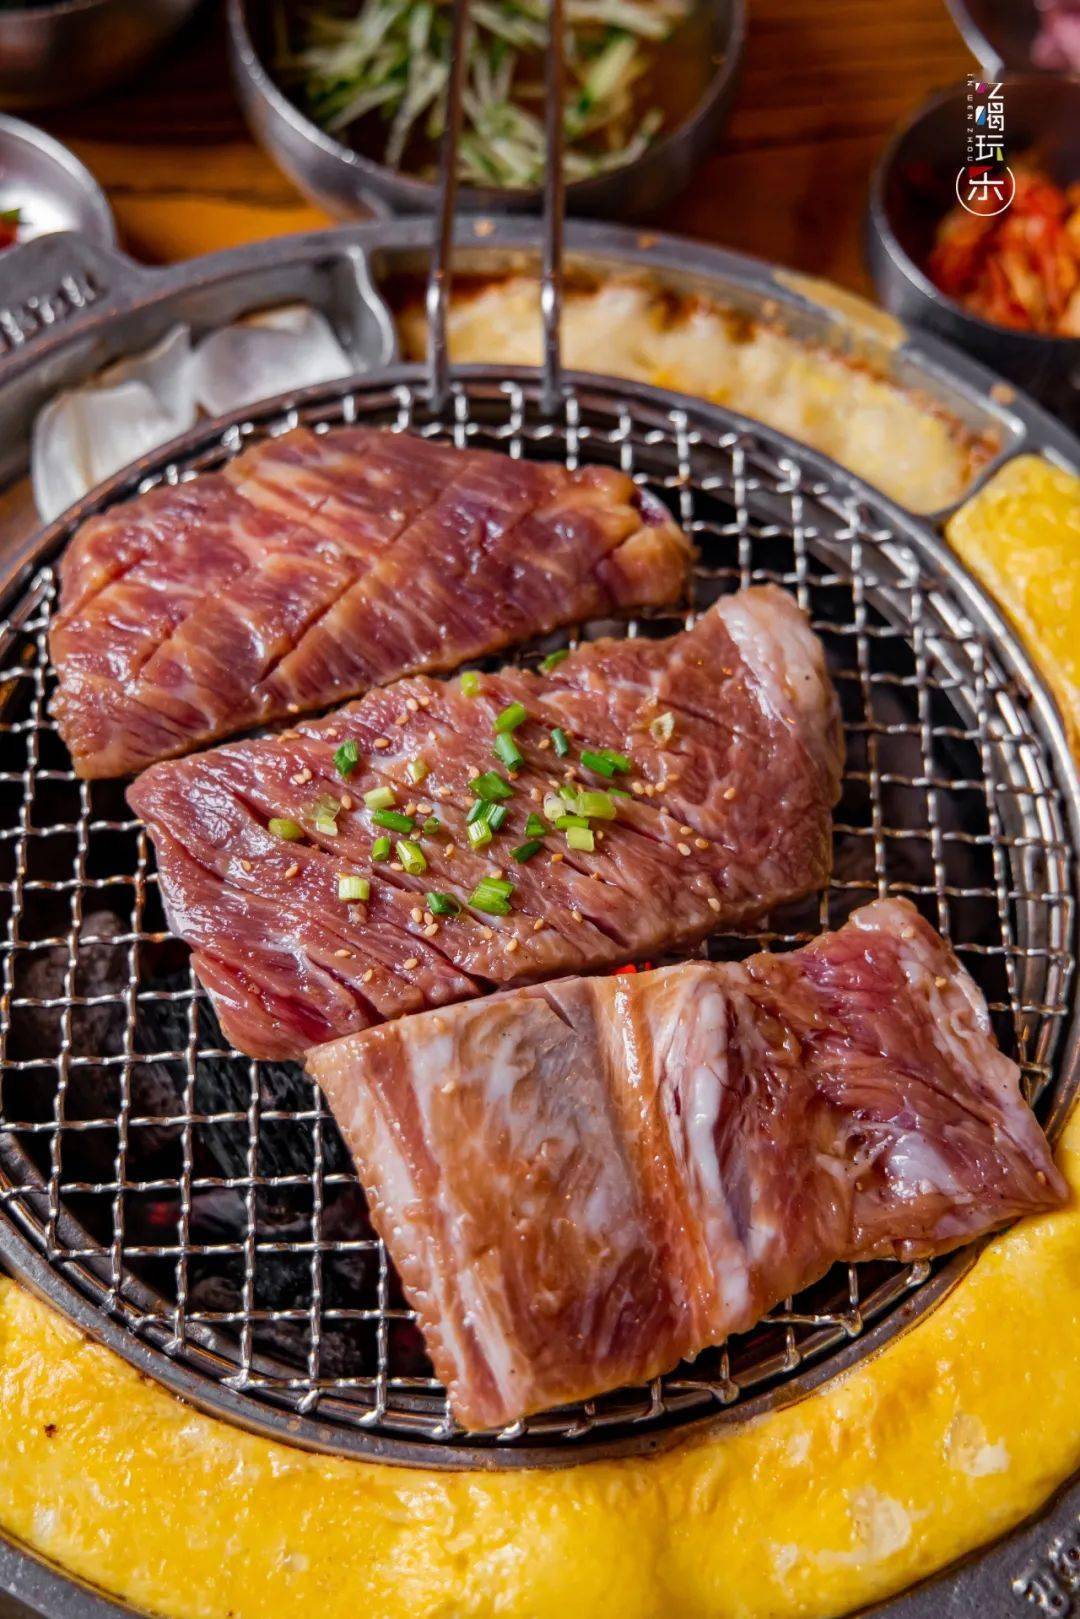 温州韩式烤肉yyds六周年庆,1元炸鸡,全场8折!